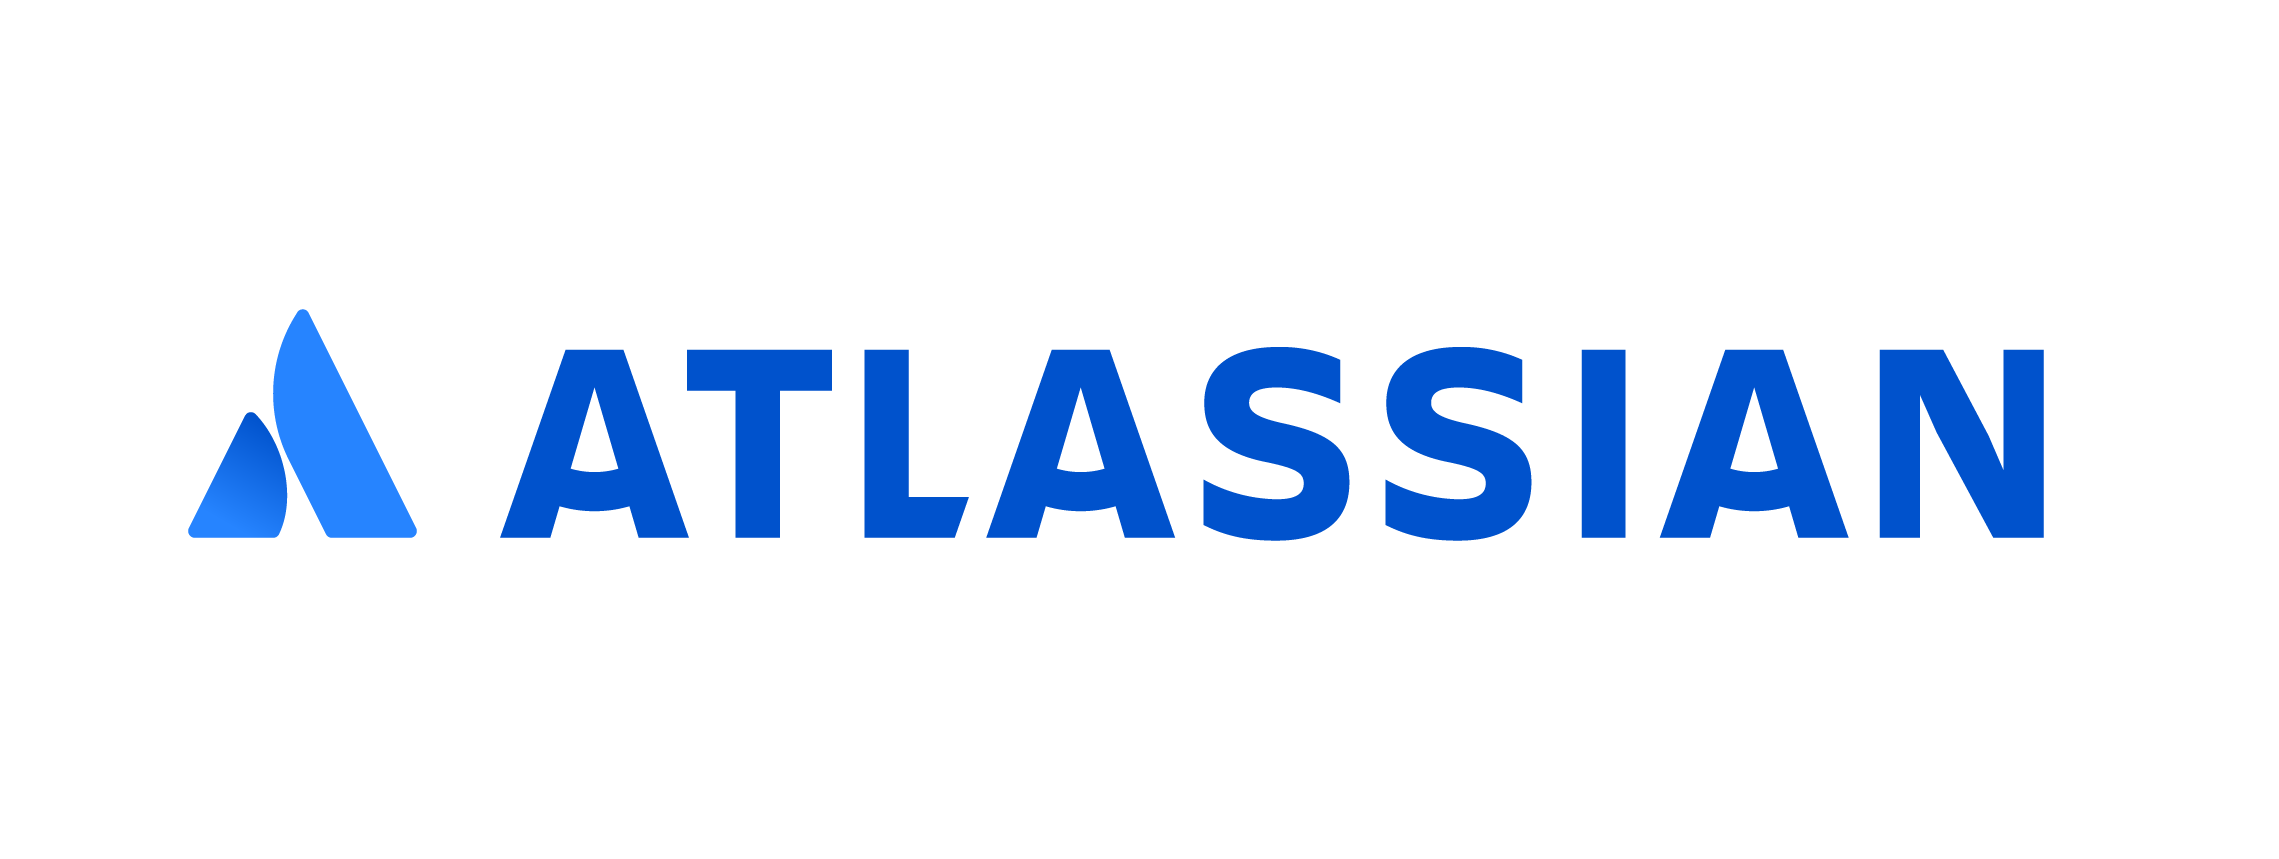 Atlassian SCIM Provisioning